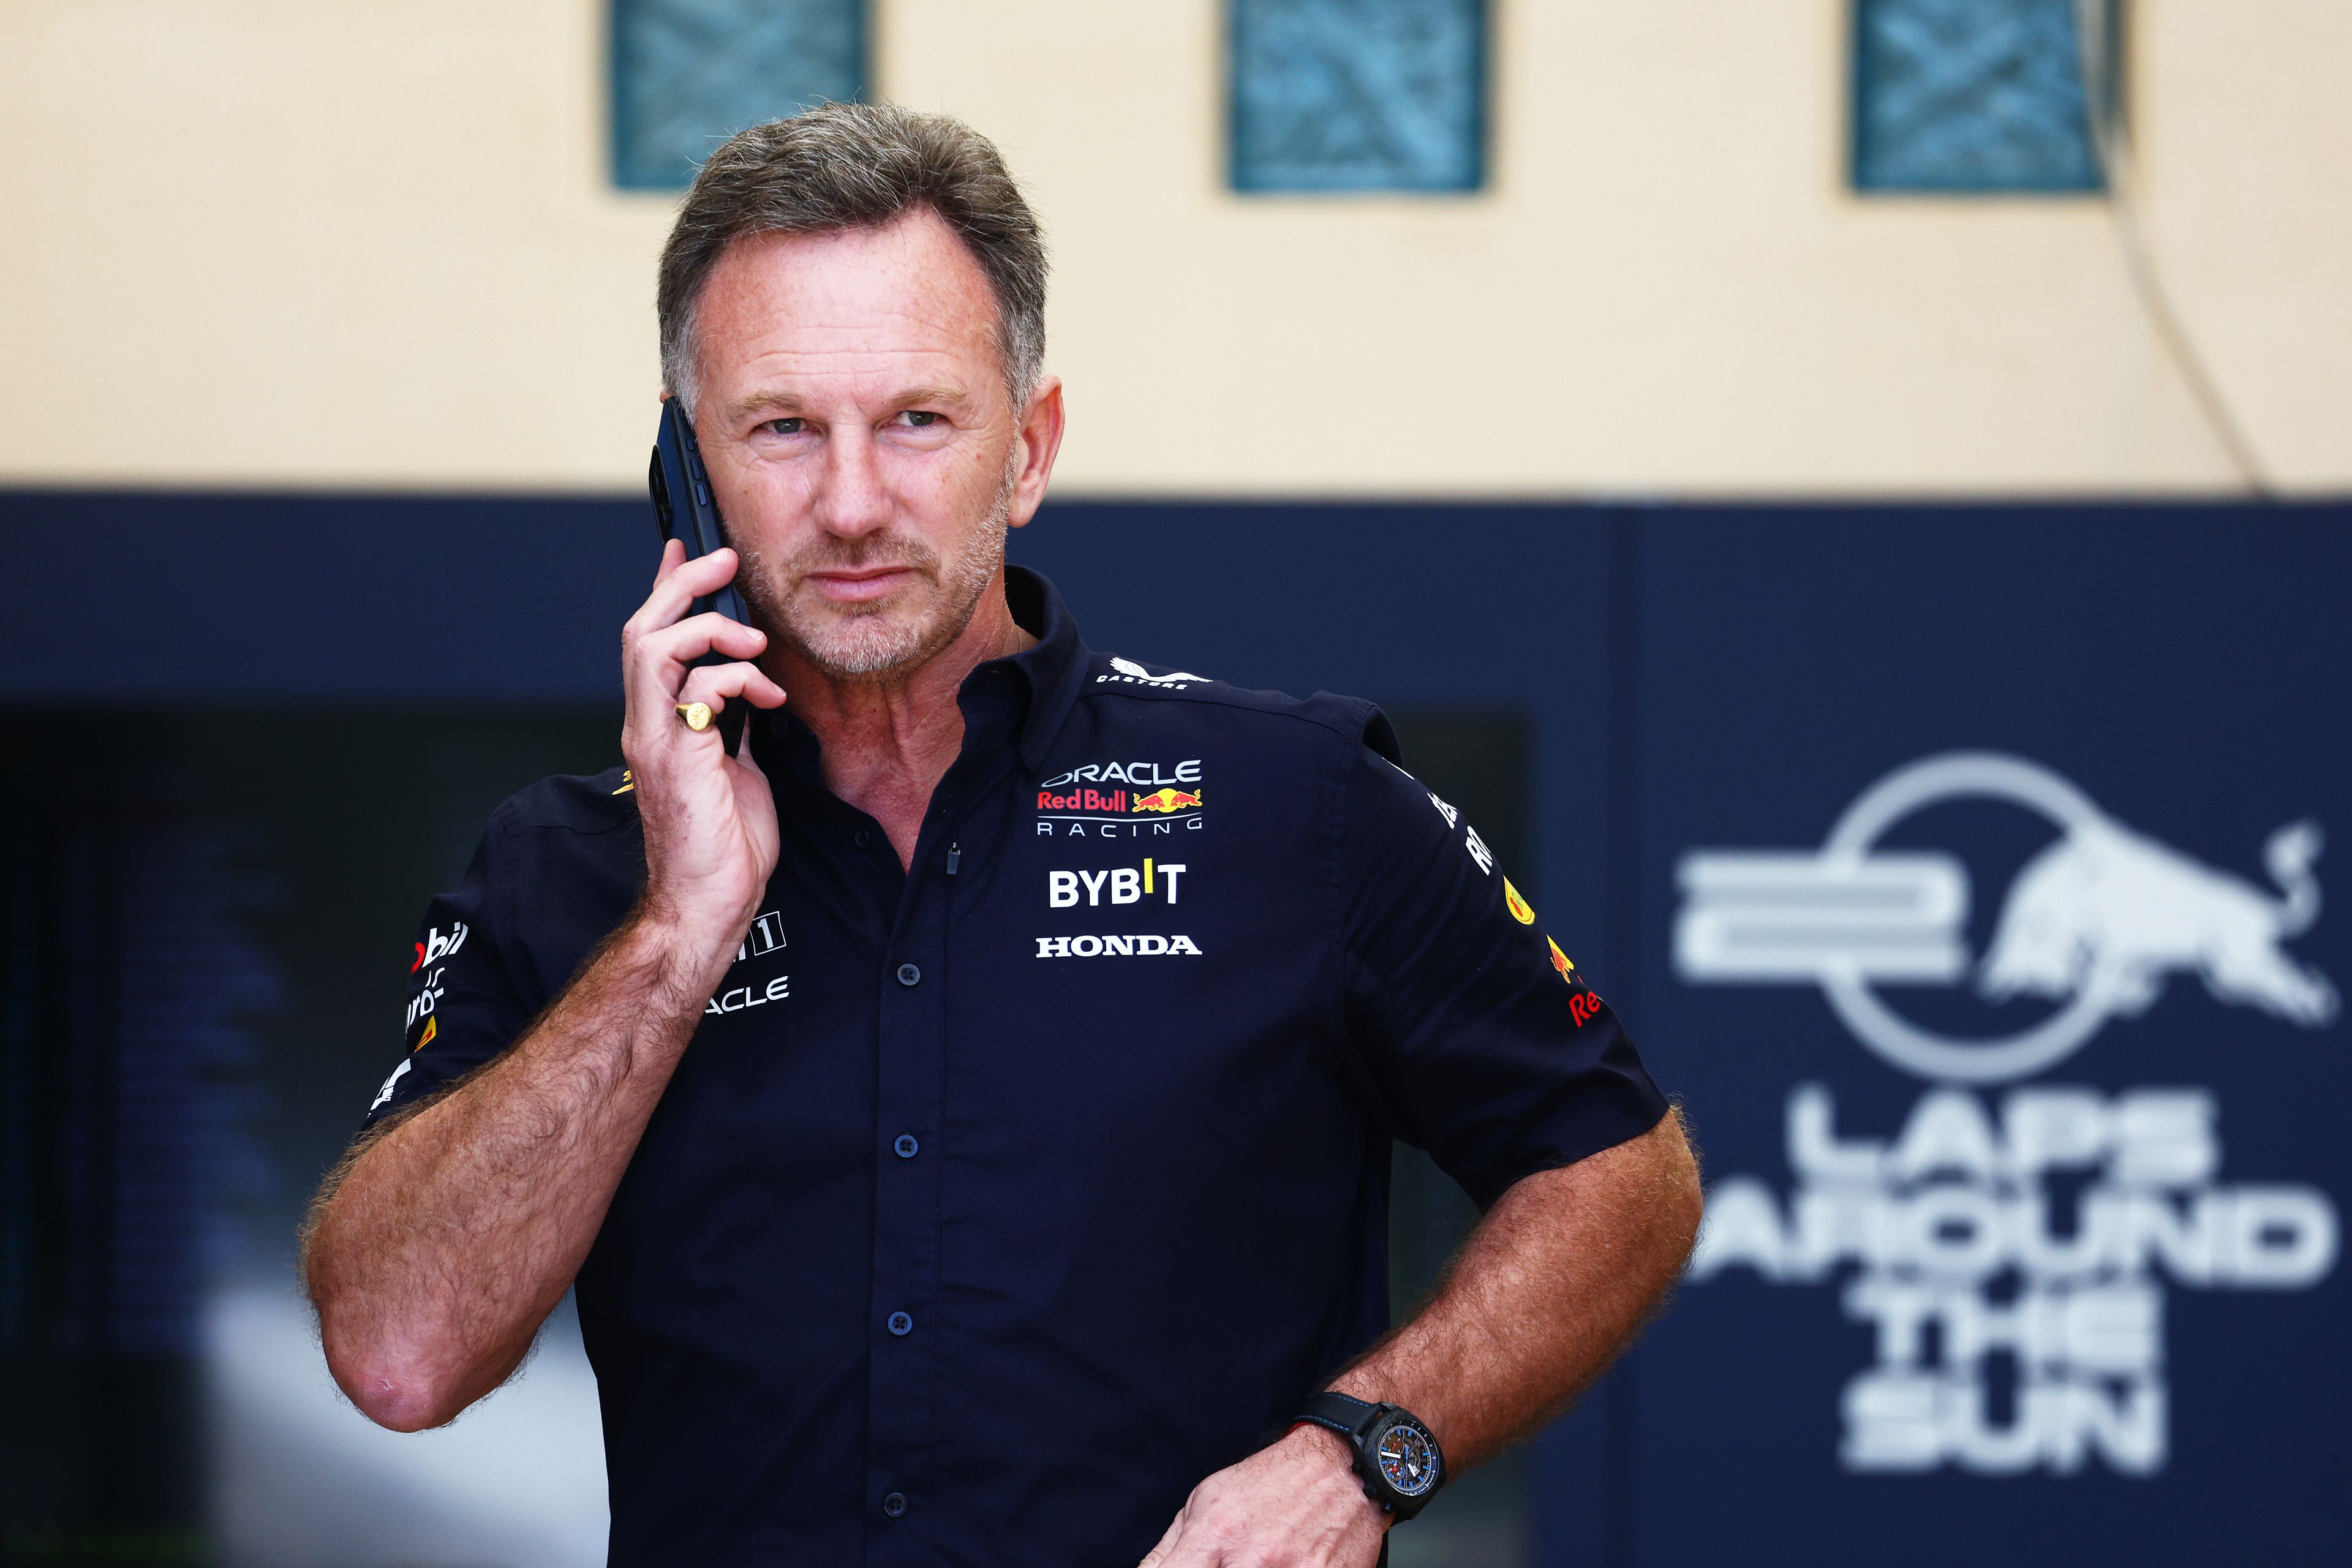 Először szólalt meg a Red Bull Racing csapatfőnöke, miután ejtették a vádakat